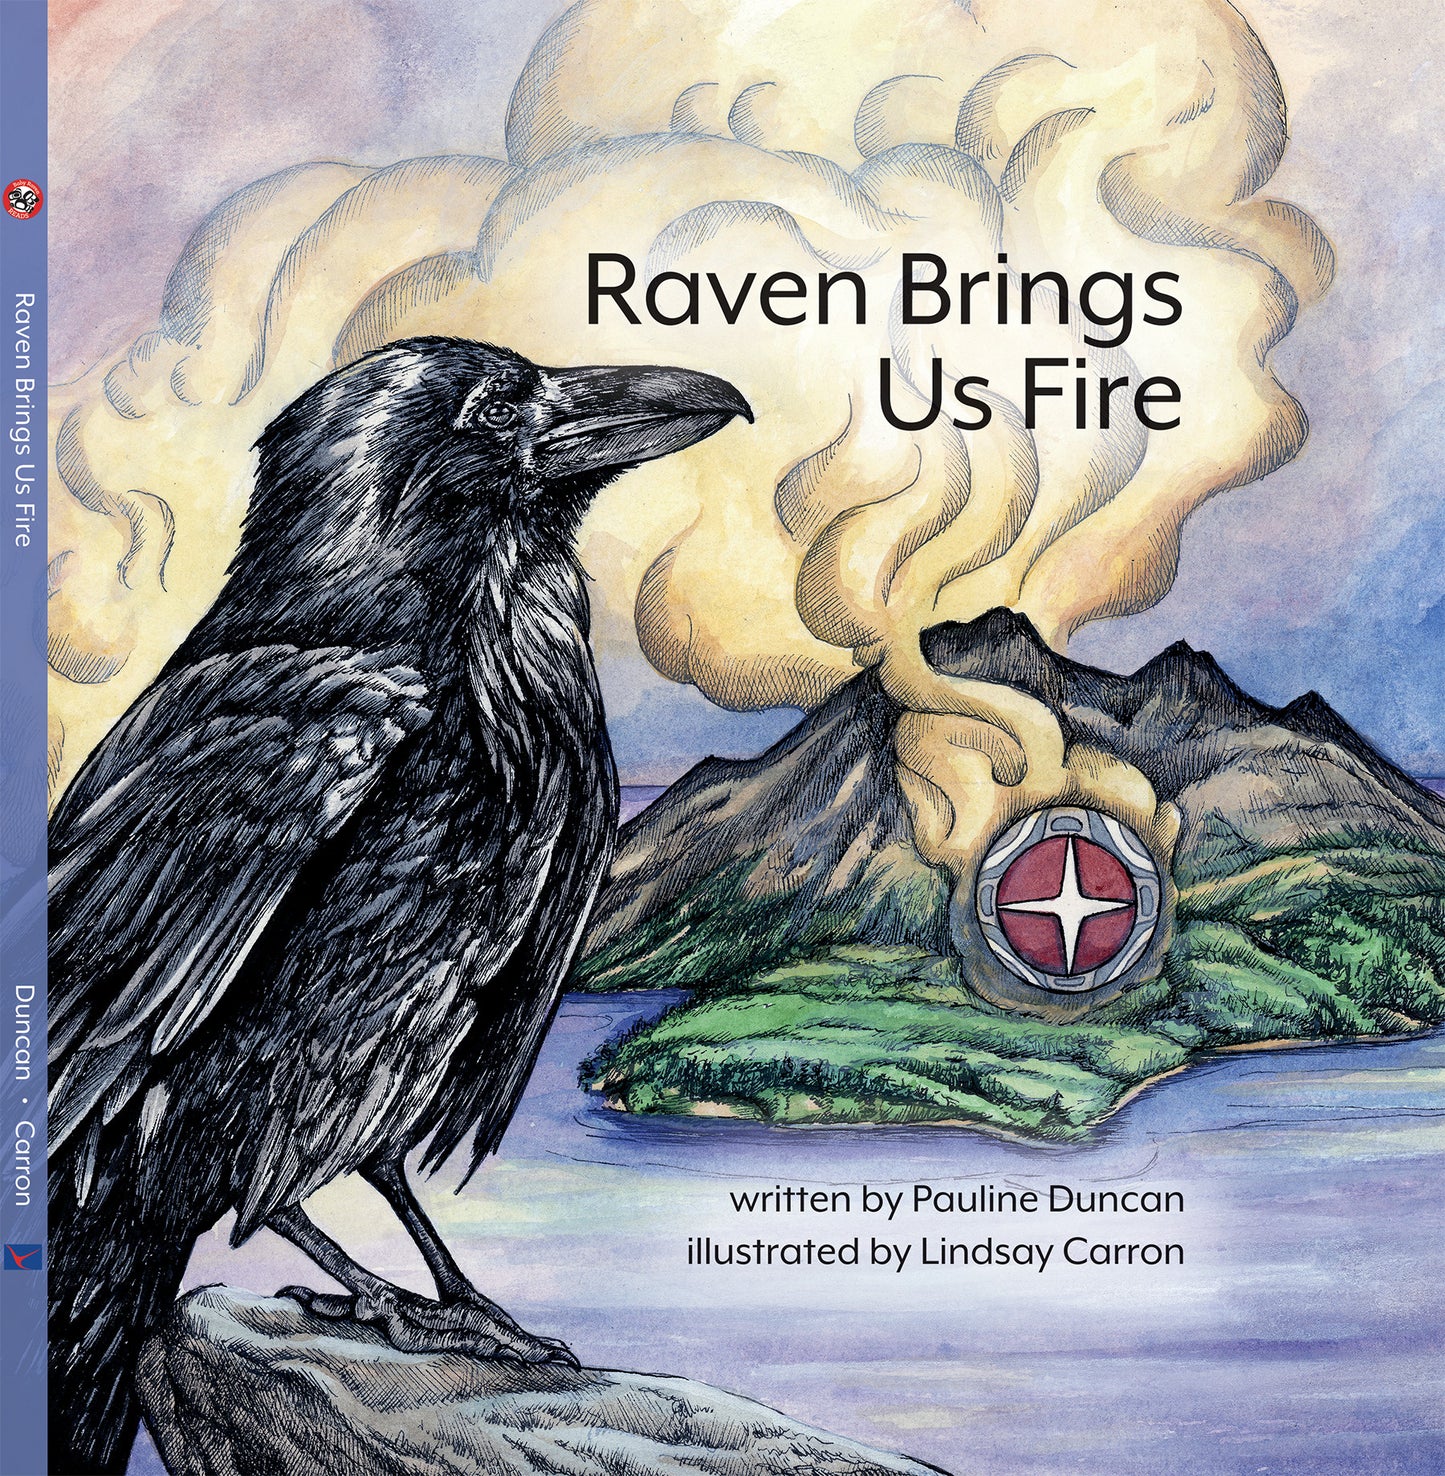 Book, BRR - “Raven Brings Us Fire", P. Duncan